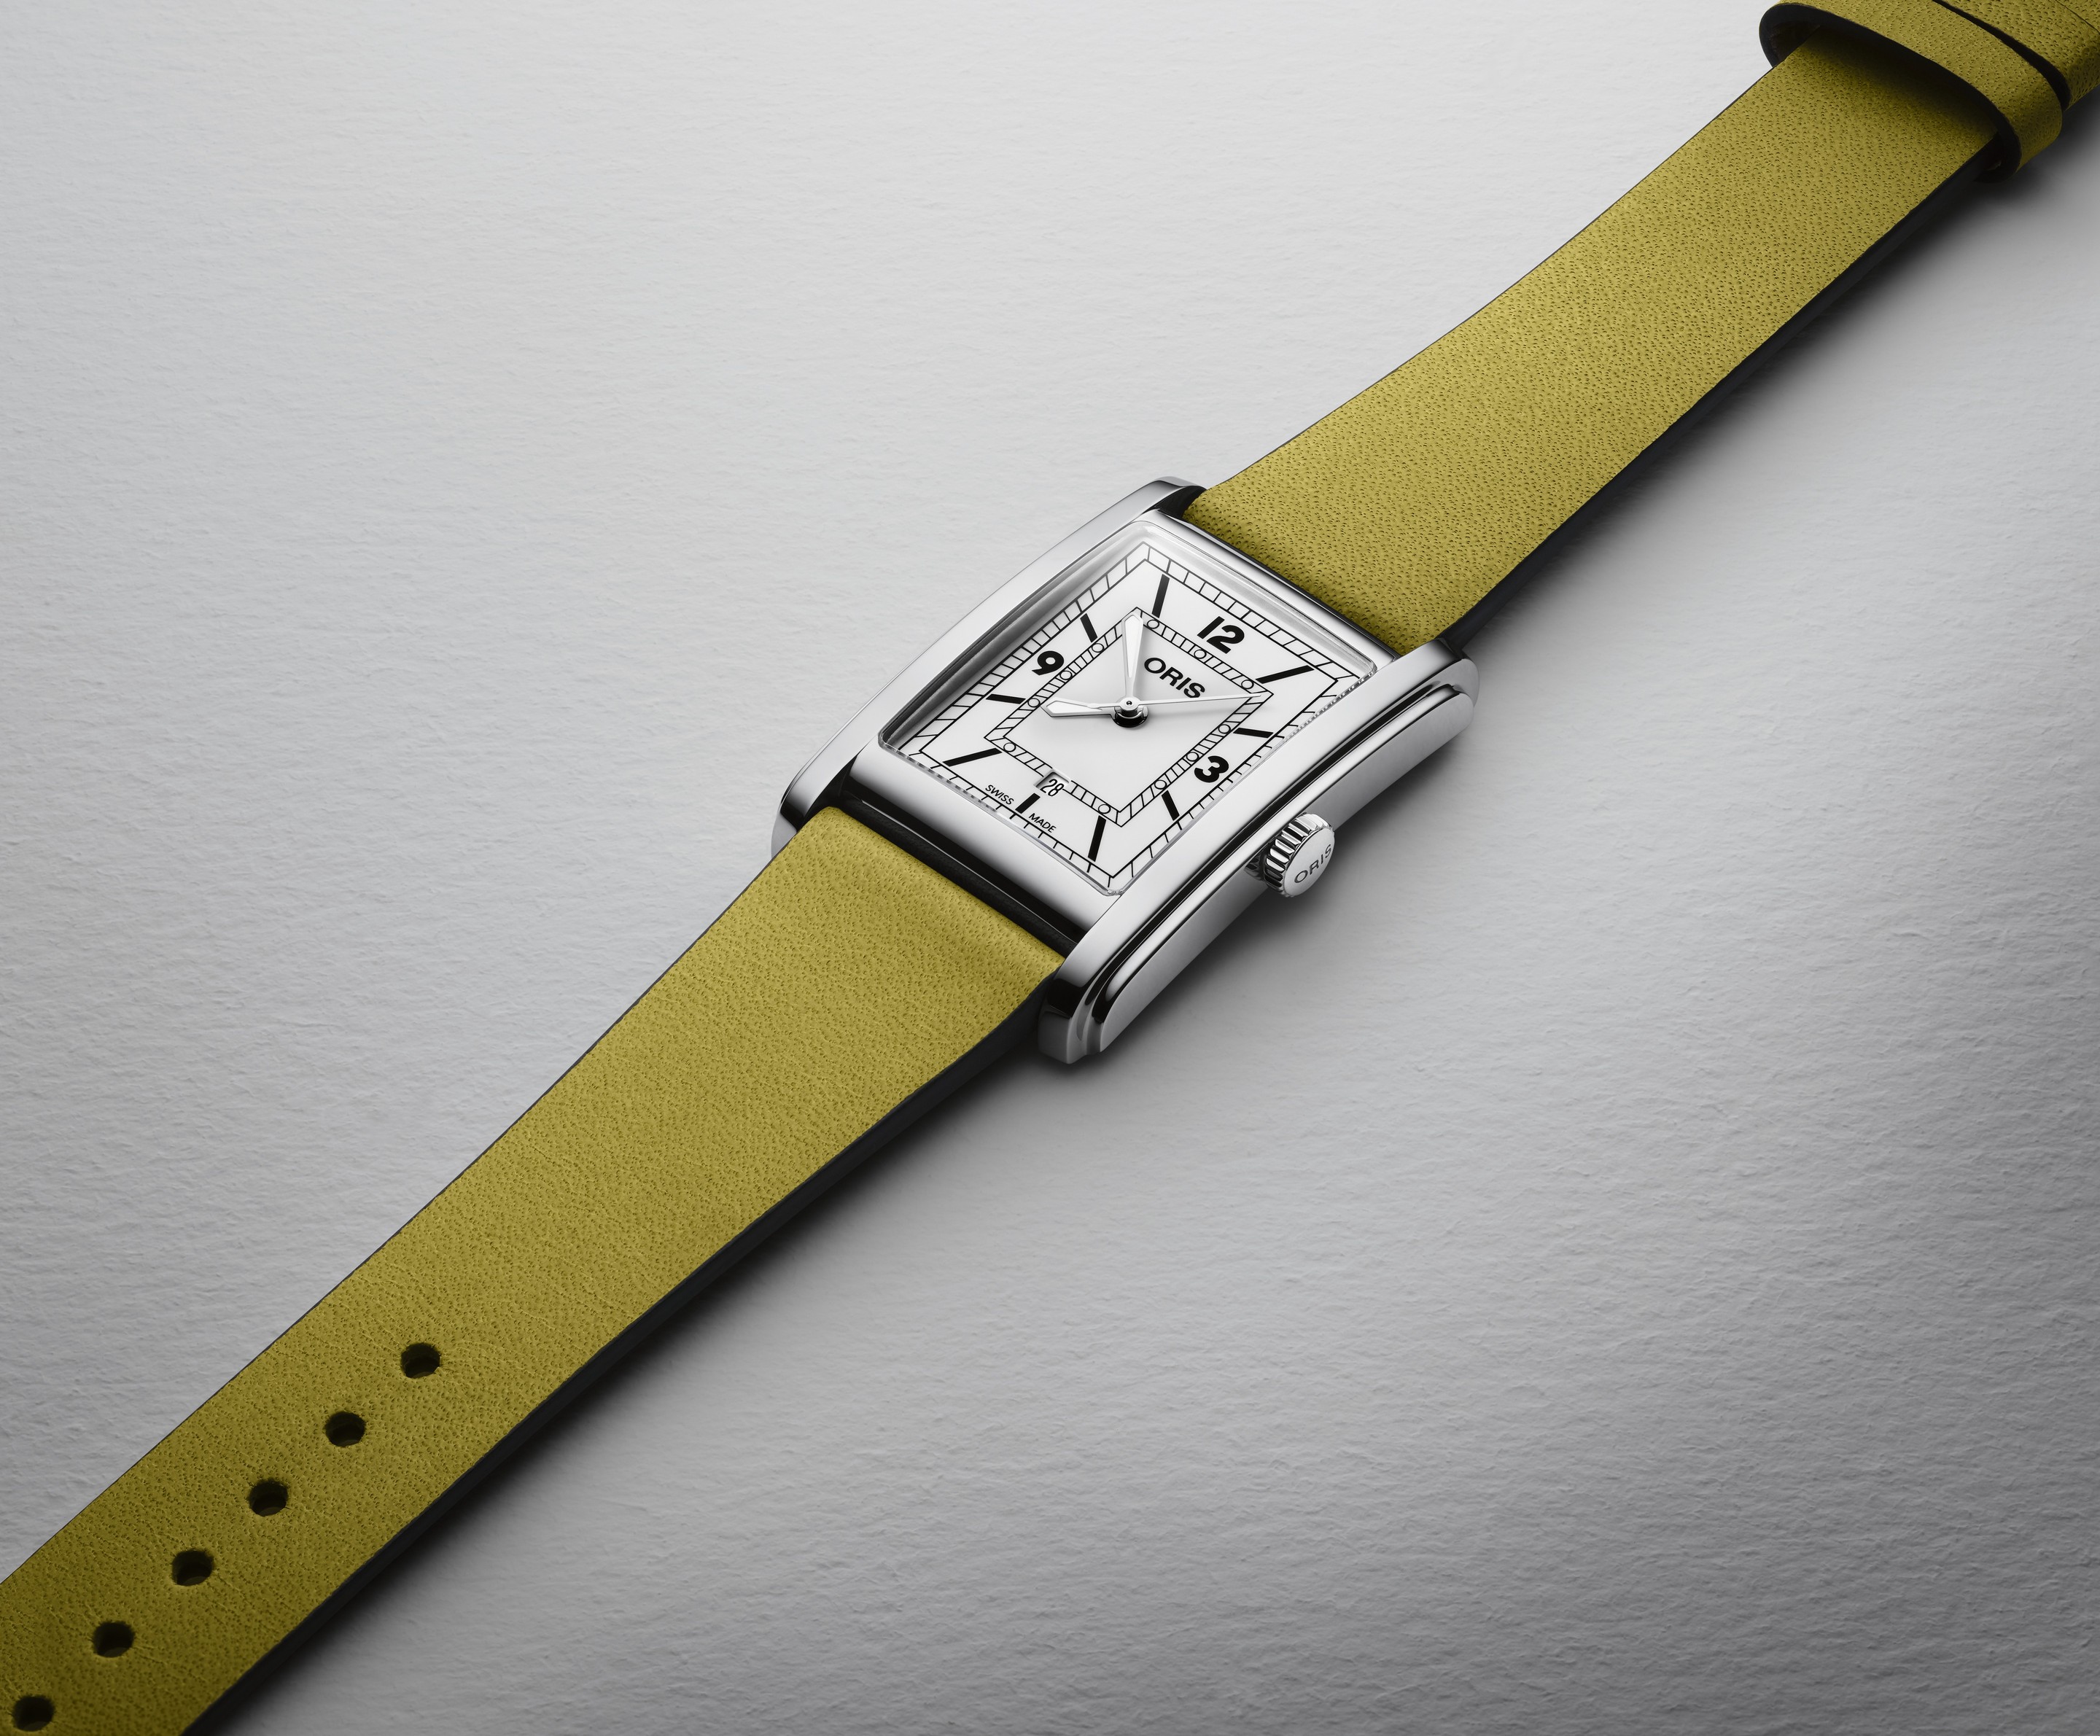 ORIS RECTANGULAR Женские швейцарские часы, автоматический механизм, сталь, 26х30 мм